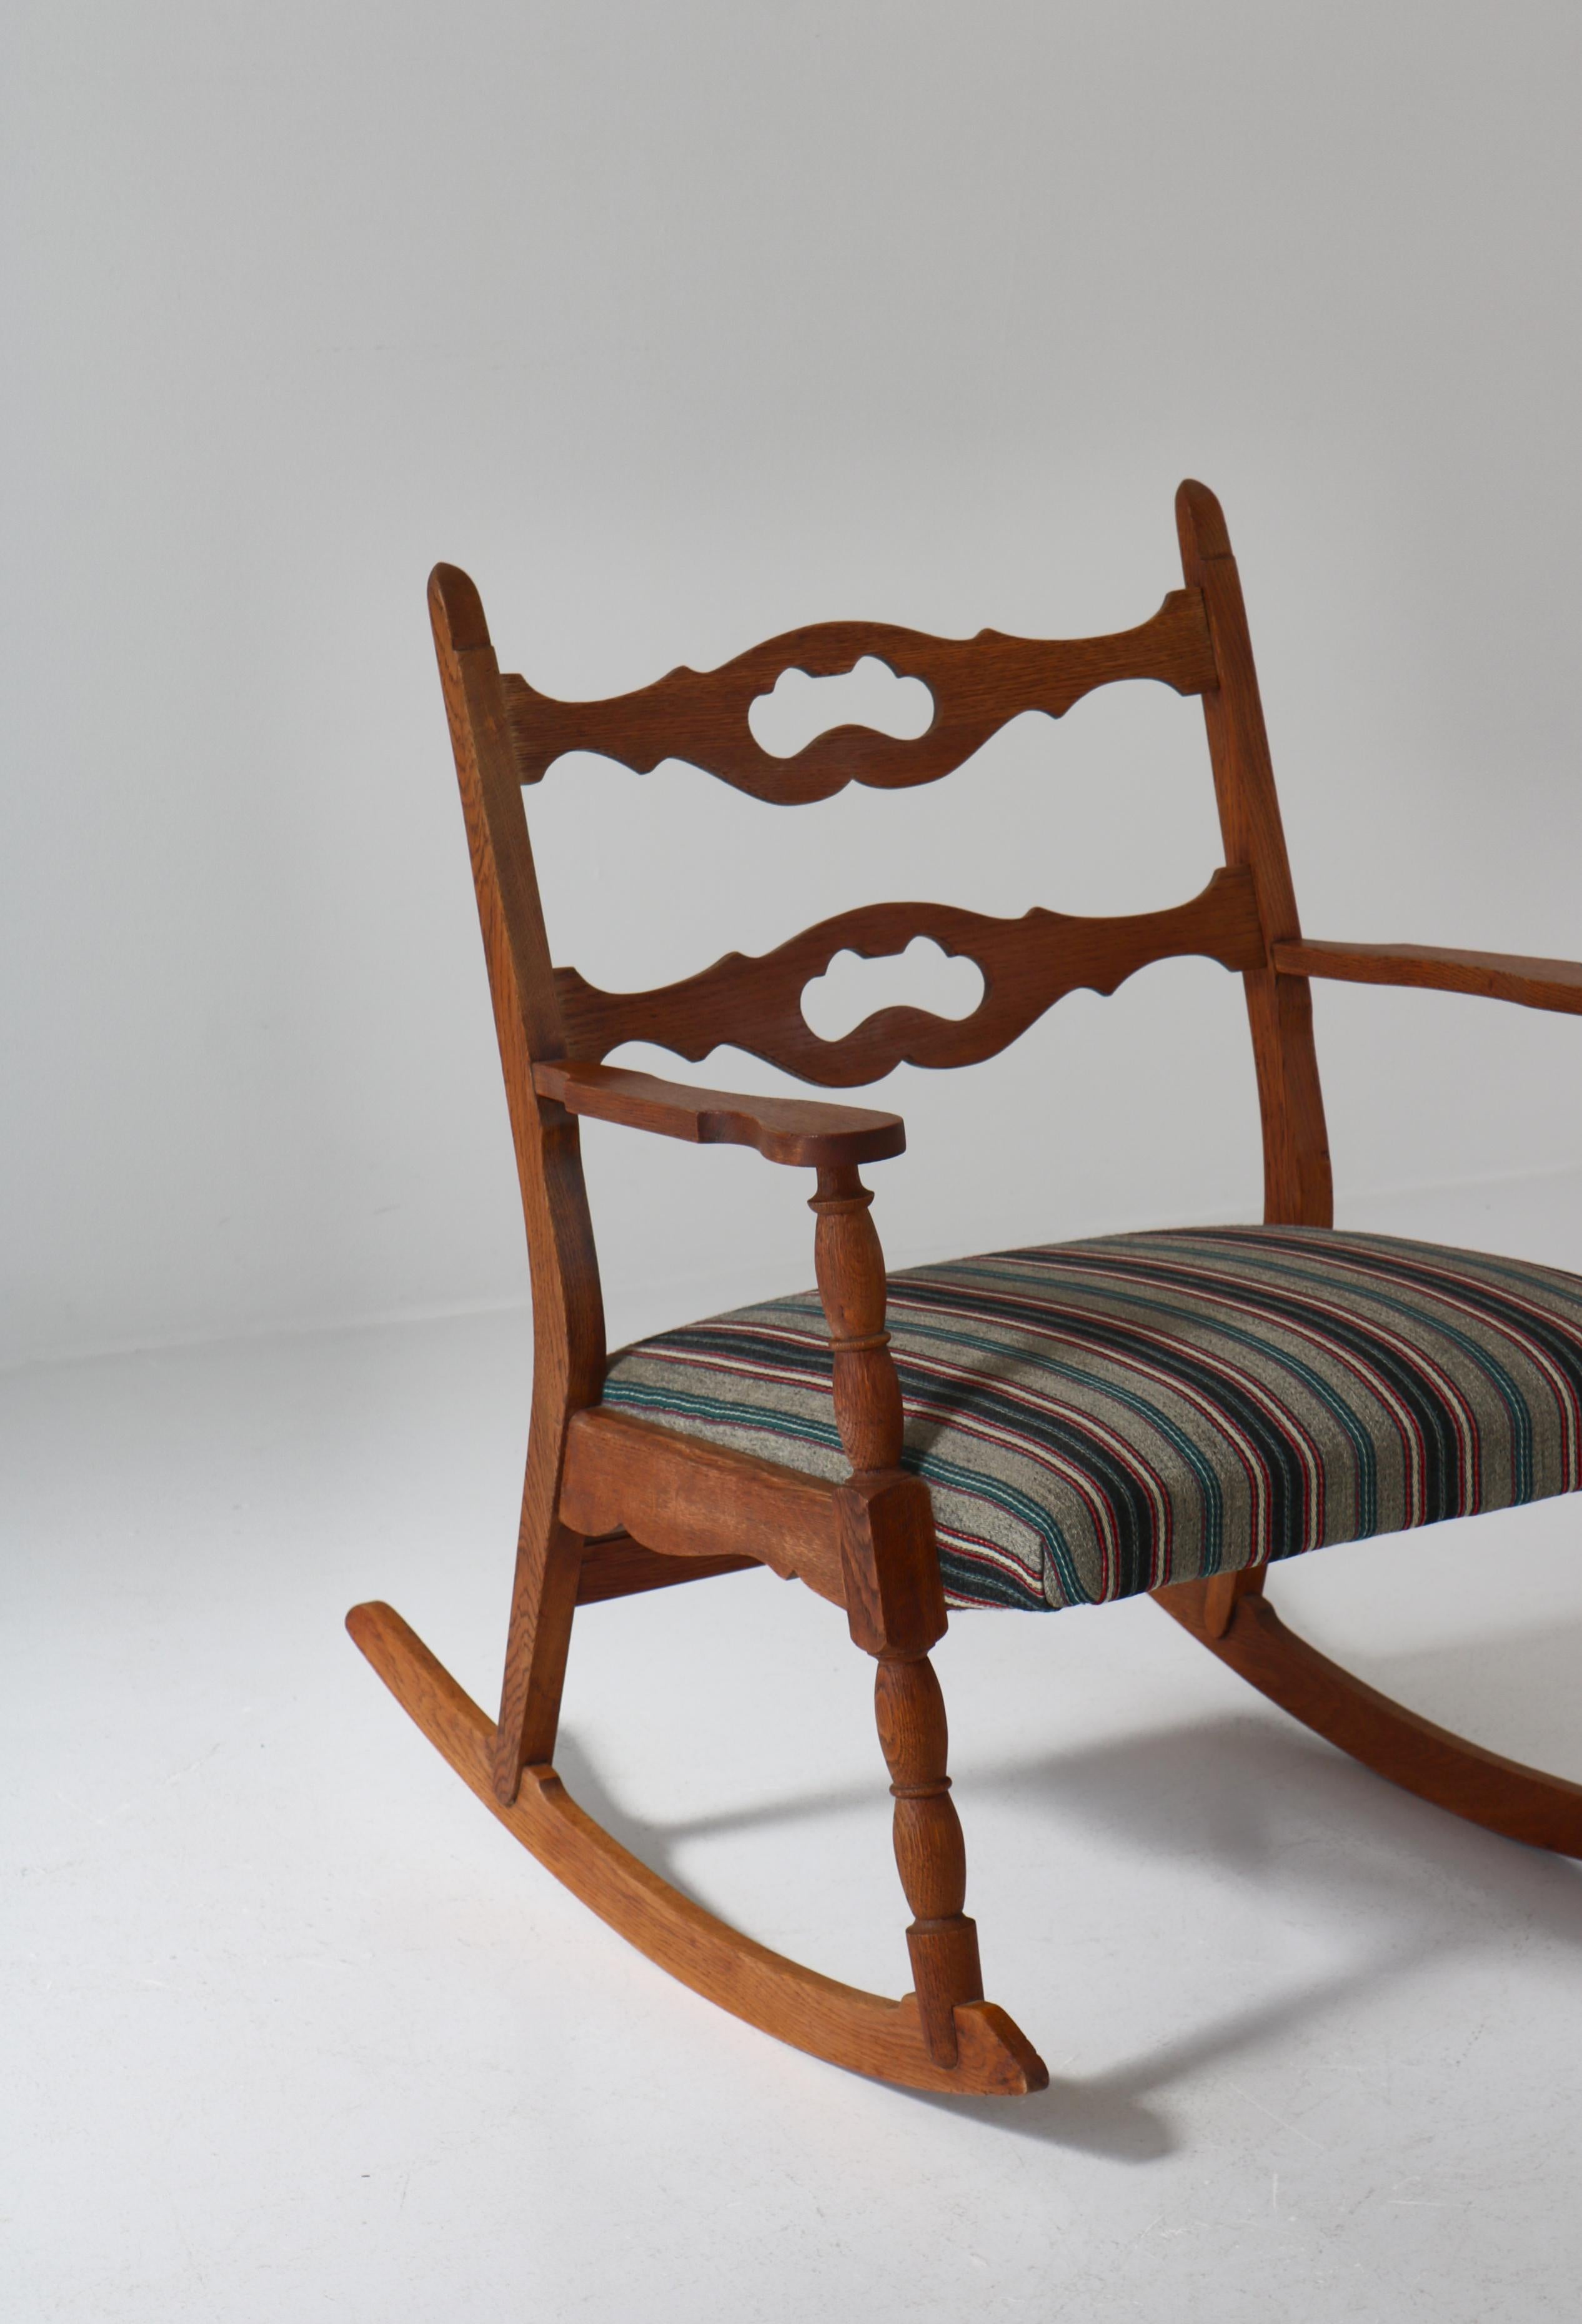 Scandinavian Modern 1950s Rocking Chair in Oak & Wool Fabric by Henry Kjærnulff, Danish Modern For Sale